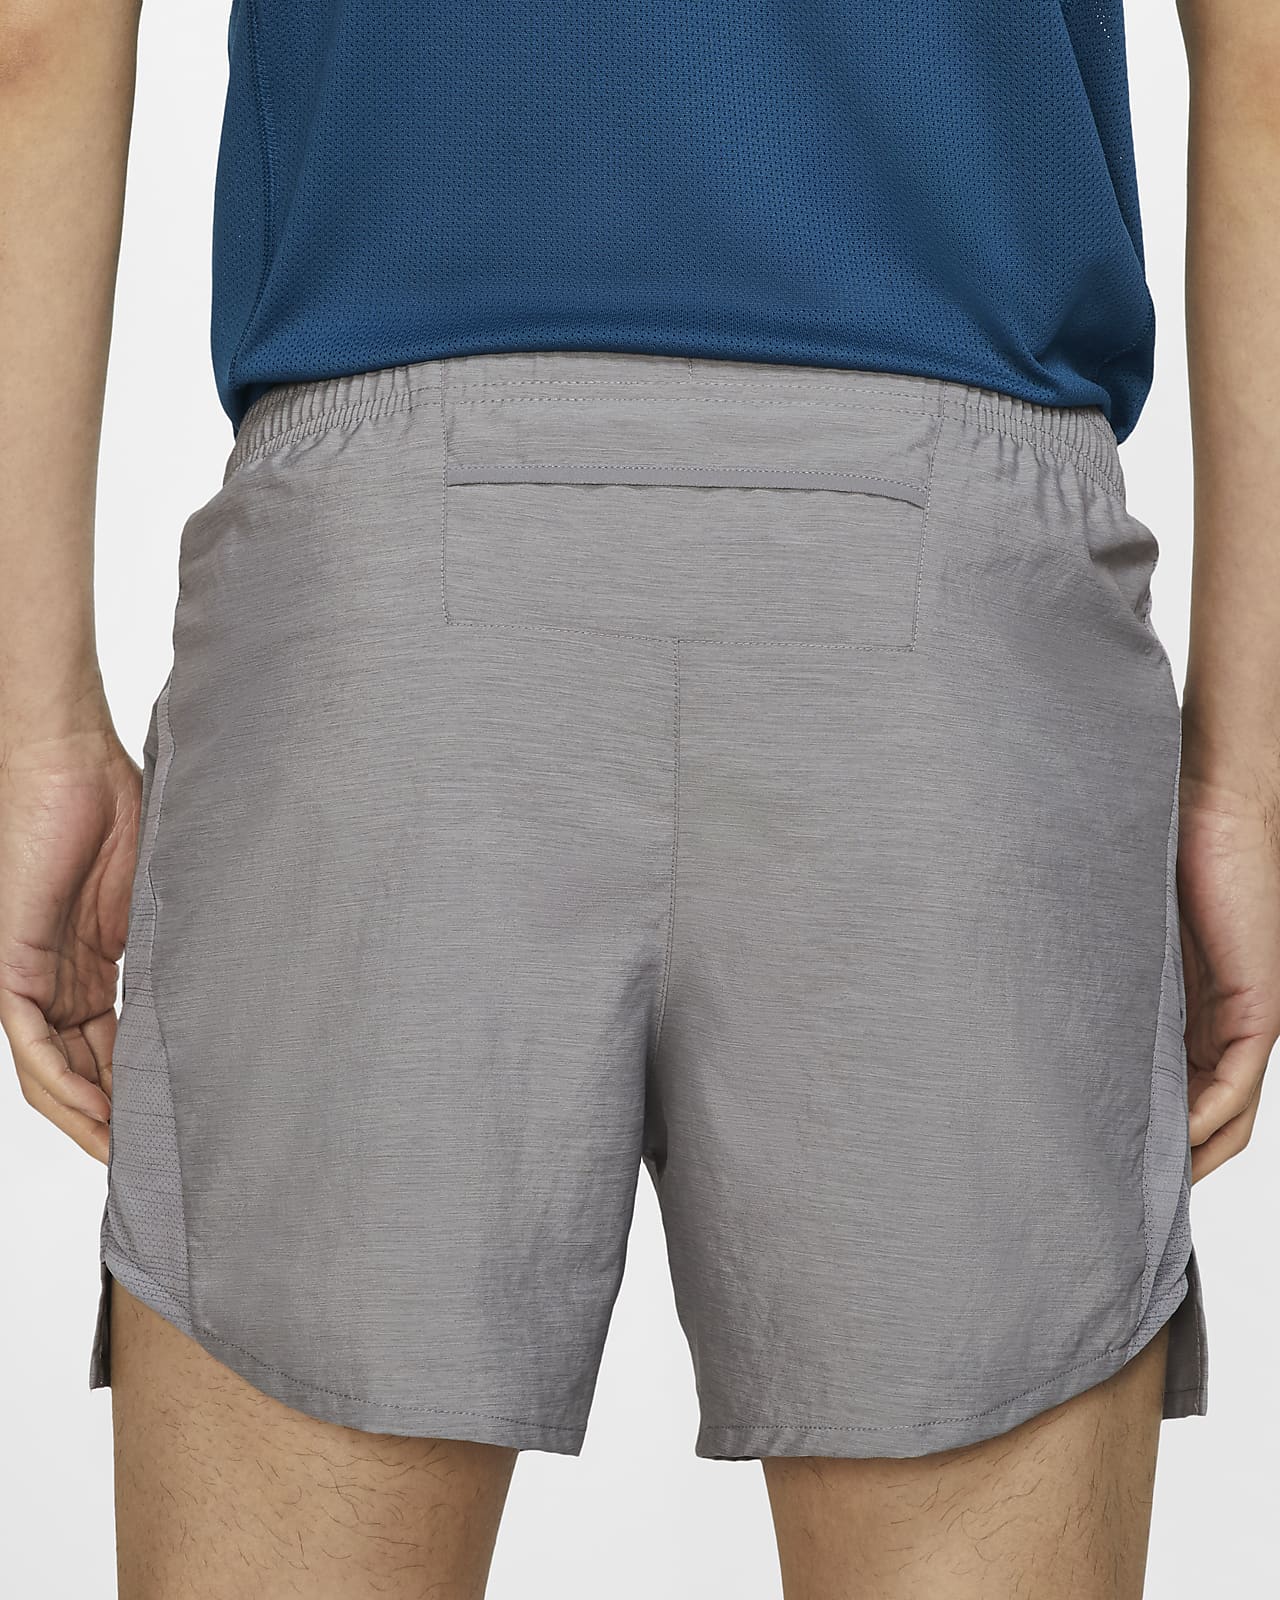 nike men's 5 inch running shorts